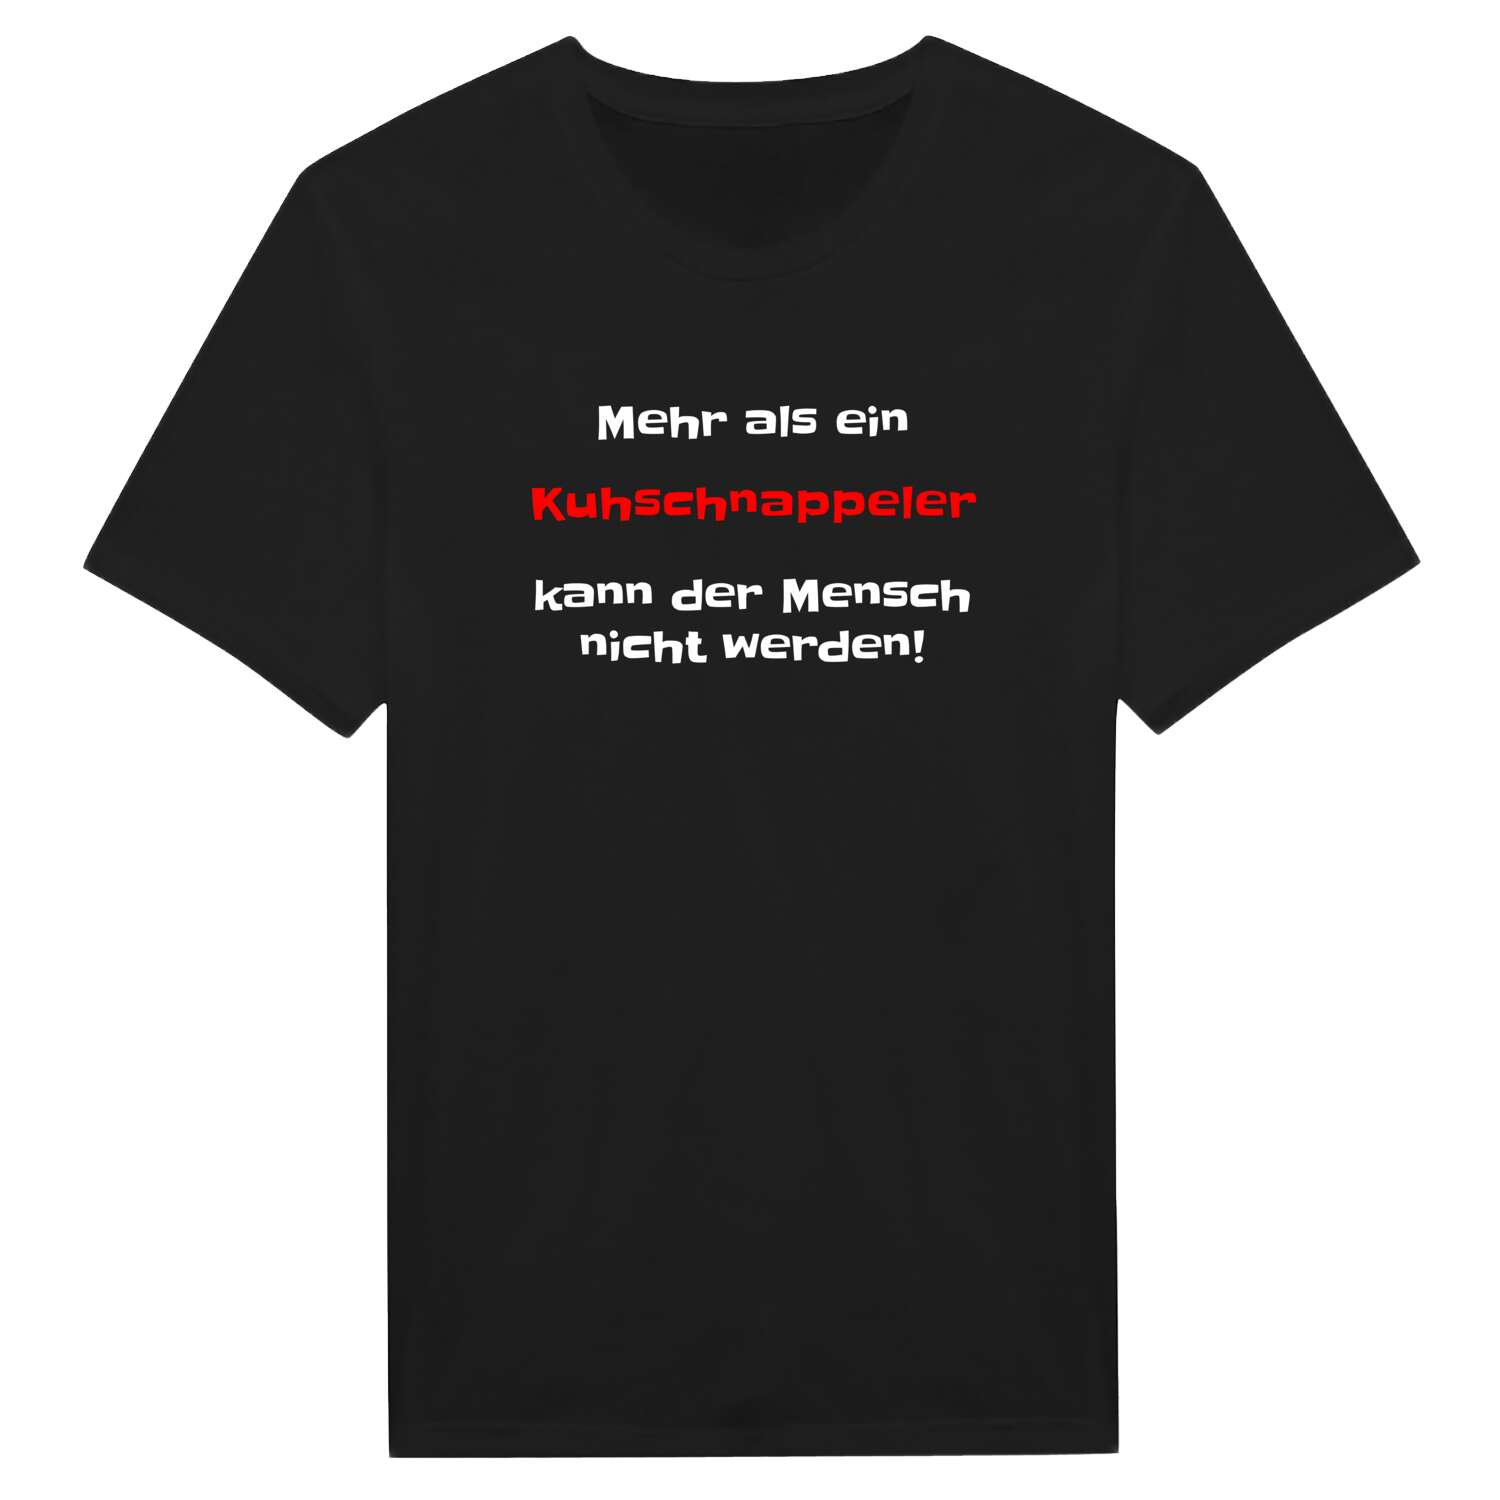 Kuhschnappel T-Shirt »Mehr als ein«